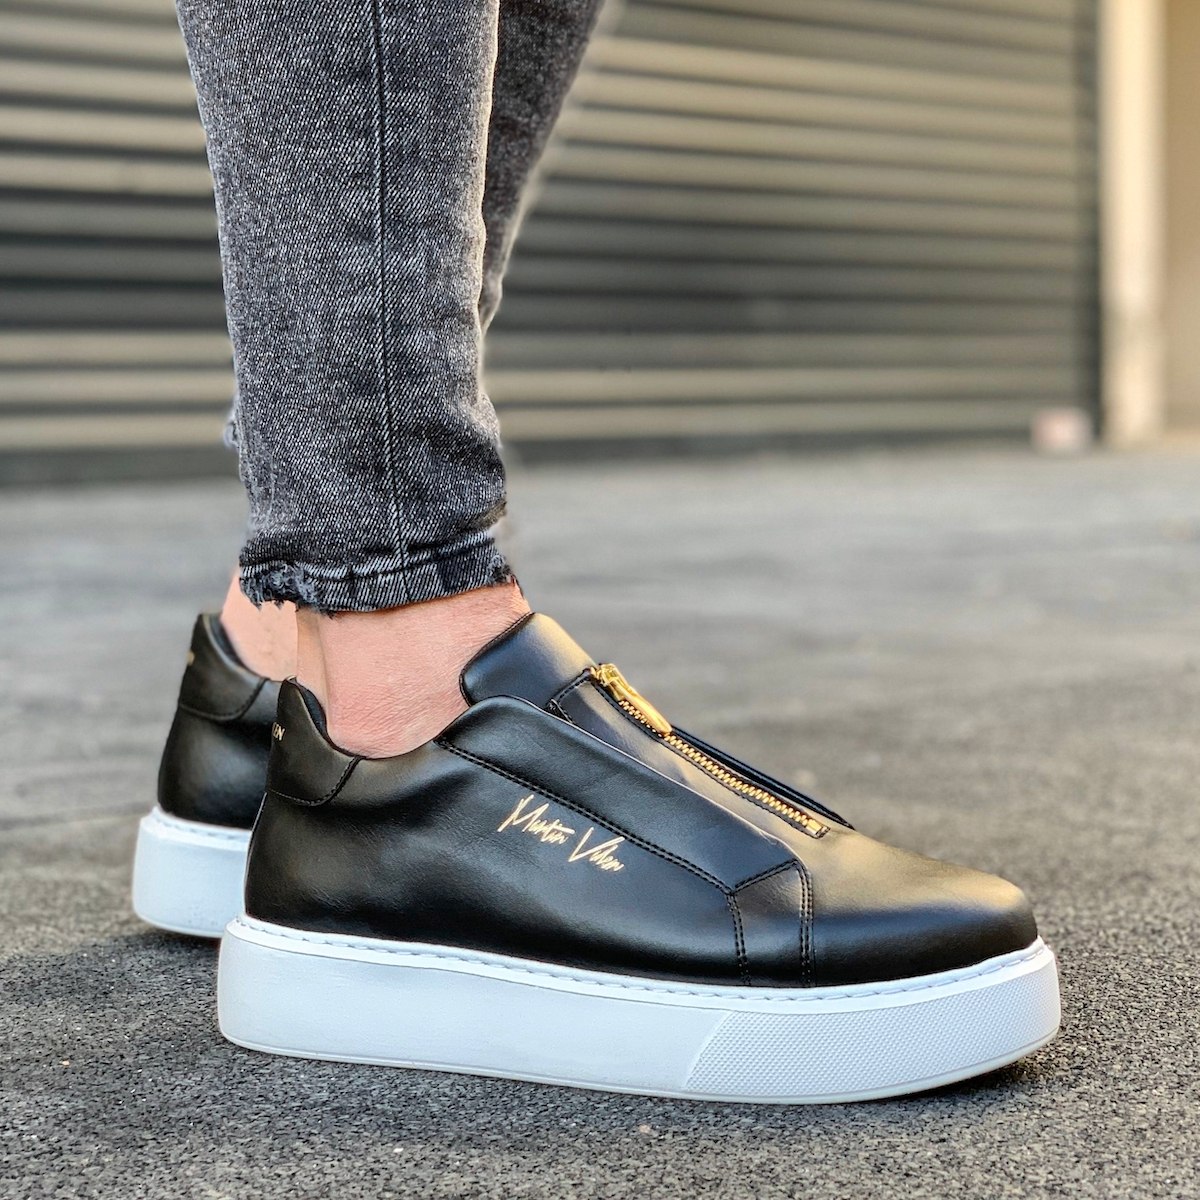 Buy Vili Slip On Sneaker Online in New Zealand | Mi Piaci